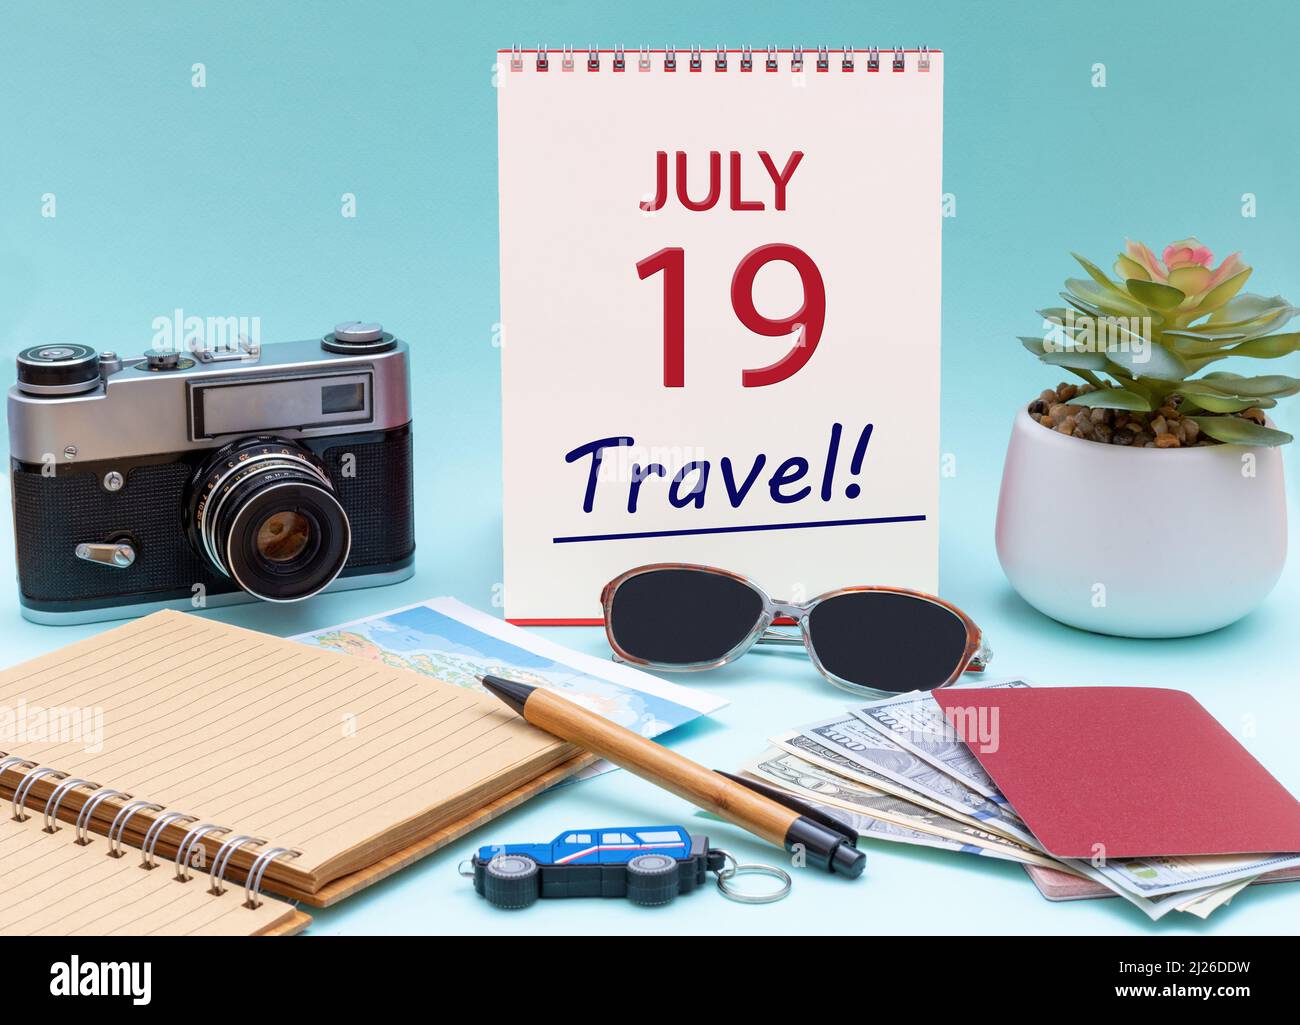 19th giorno di luglio. Pianificazione di viaggio, viaggio di vacanza - Calendario con la data 19July occhiali blocco note penna fotocamera cash passaporti. Mese d'estate, giorno del voi Foto Stock